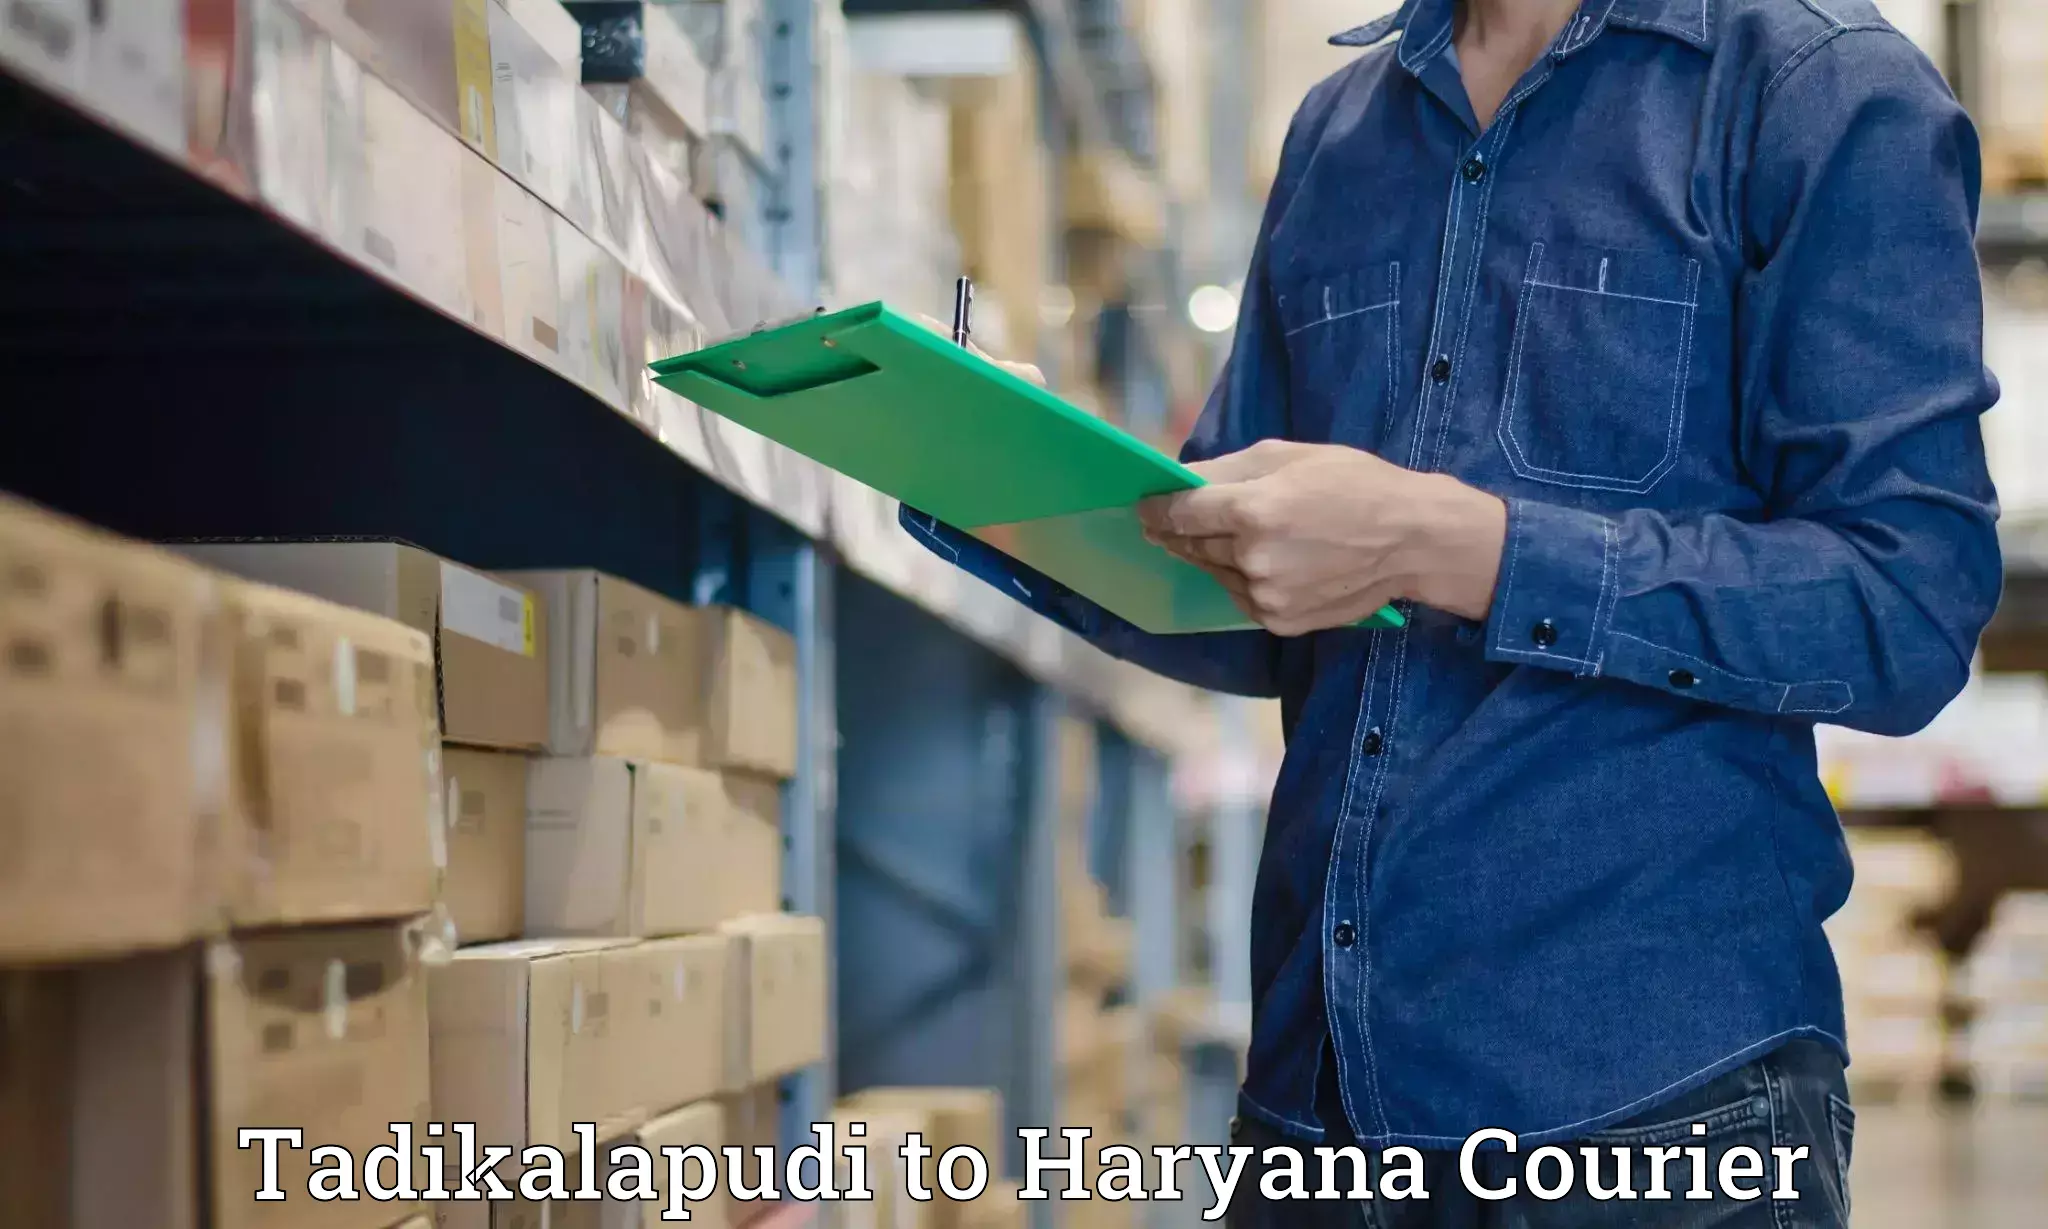 Luggage transport company Tadikalapudi to Haryana